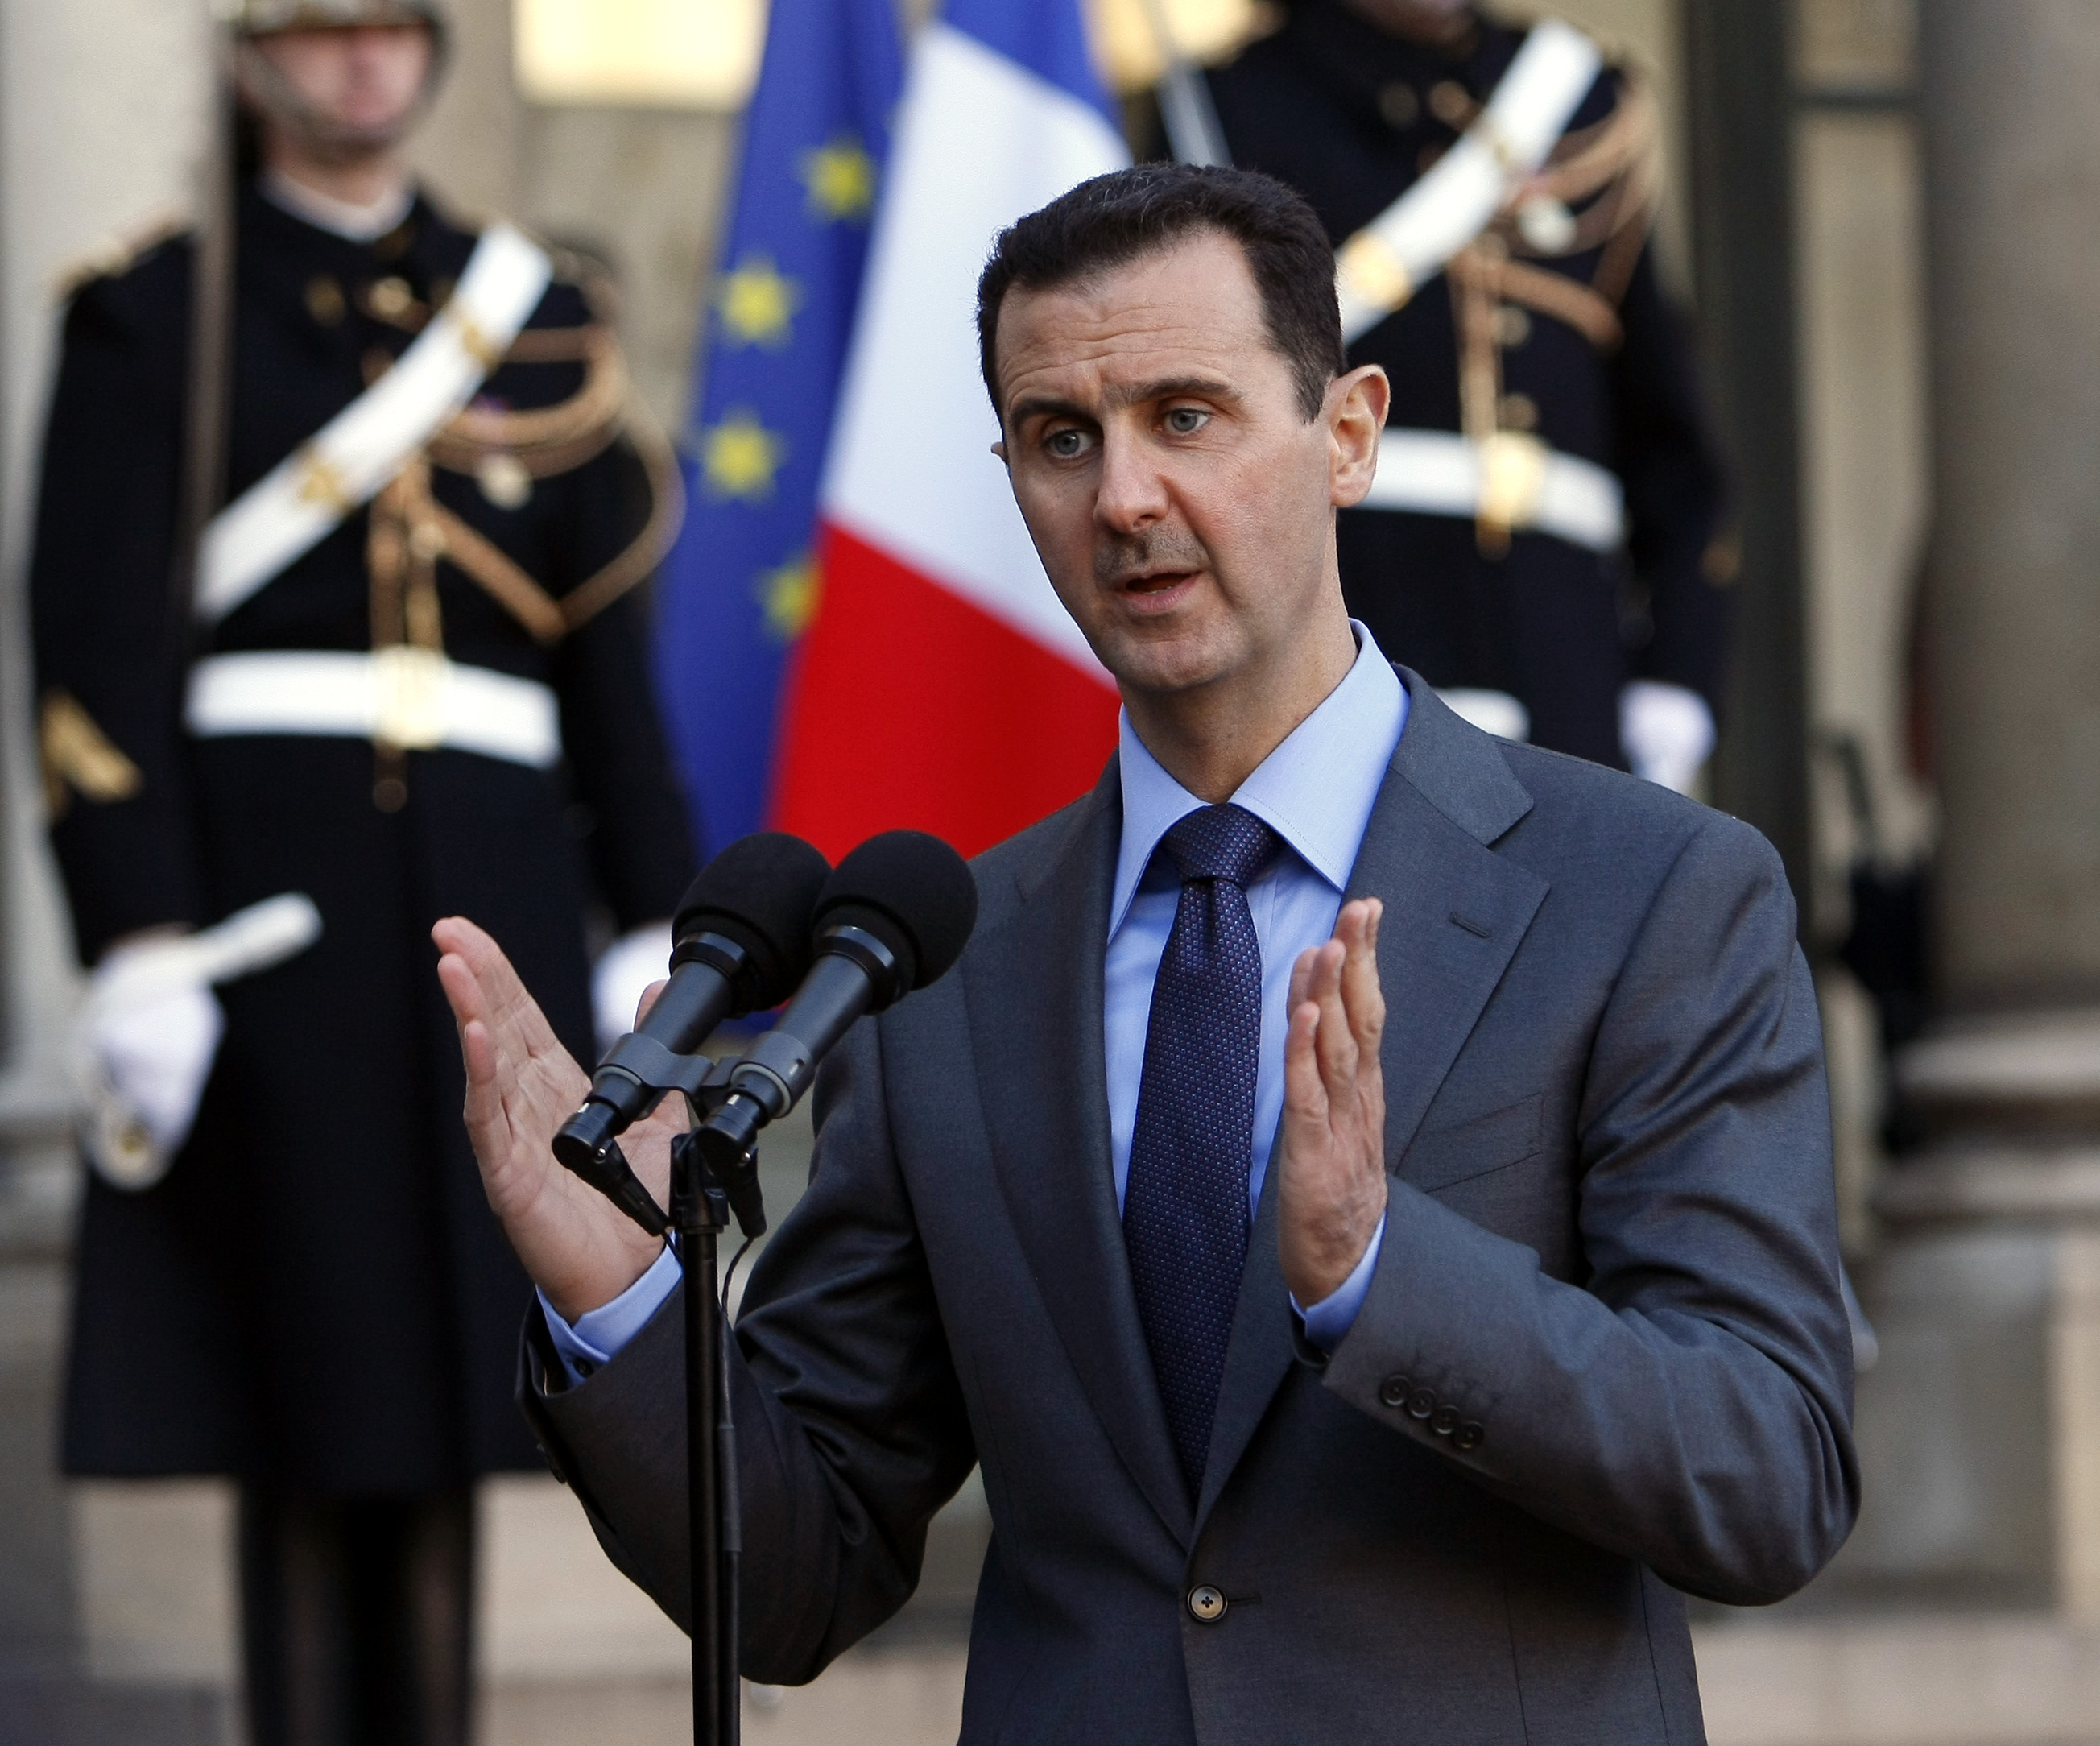 Trots påtryckningar om avgång vägrar Assad lämna ifrån sig makten.